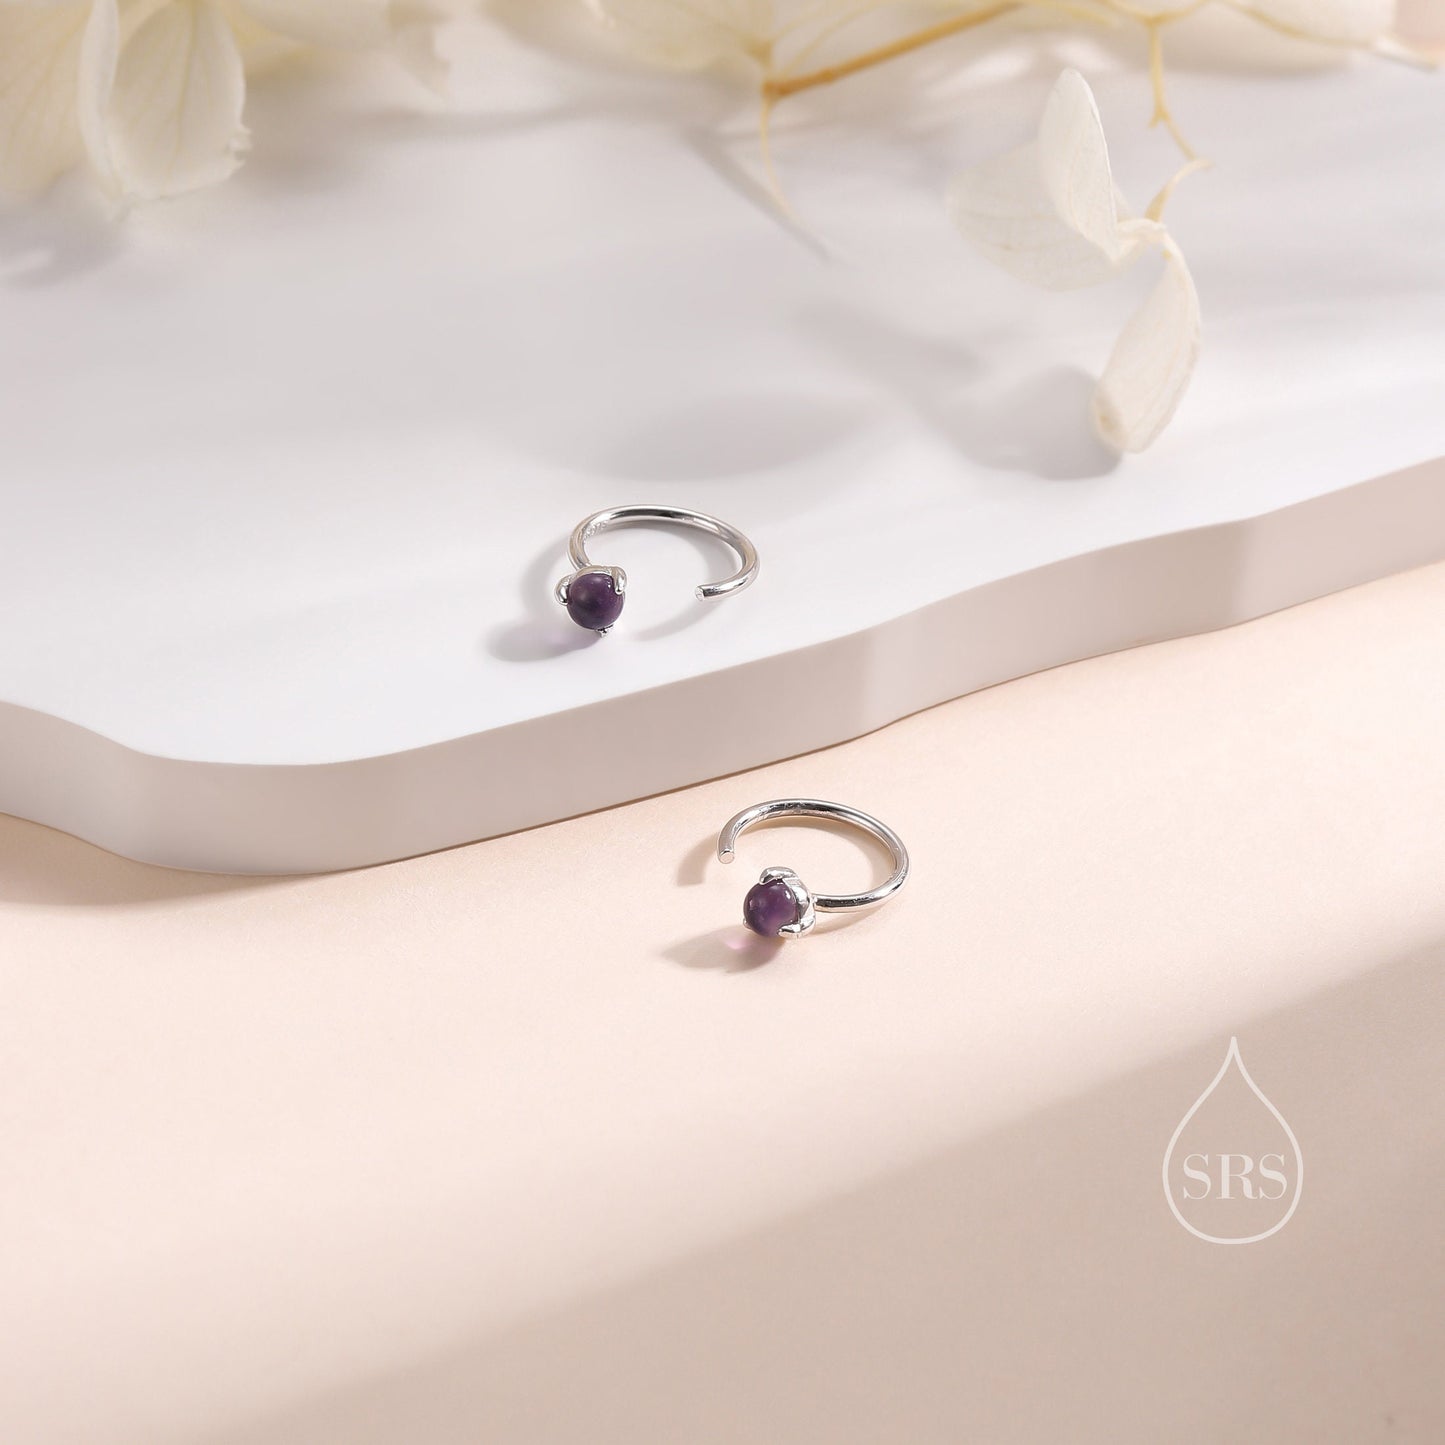 Genuine Amethyst Huggie Hoop Earrings in Sterling Silver, 3mm Natural Purple Amethyst Open Hoops, Pull Through Threaders, C Shape Half Hoops